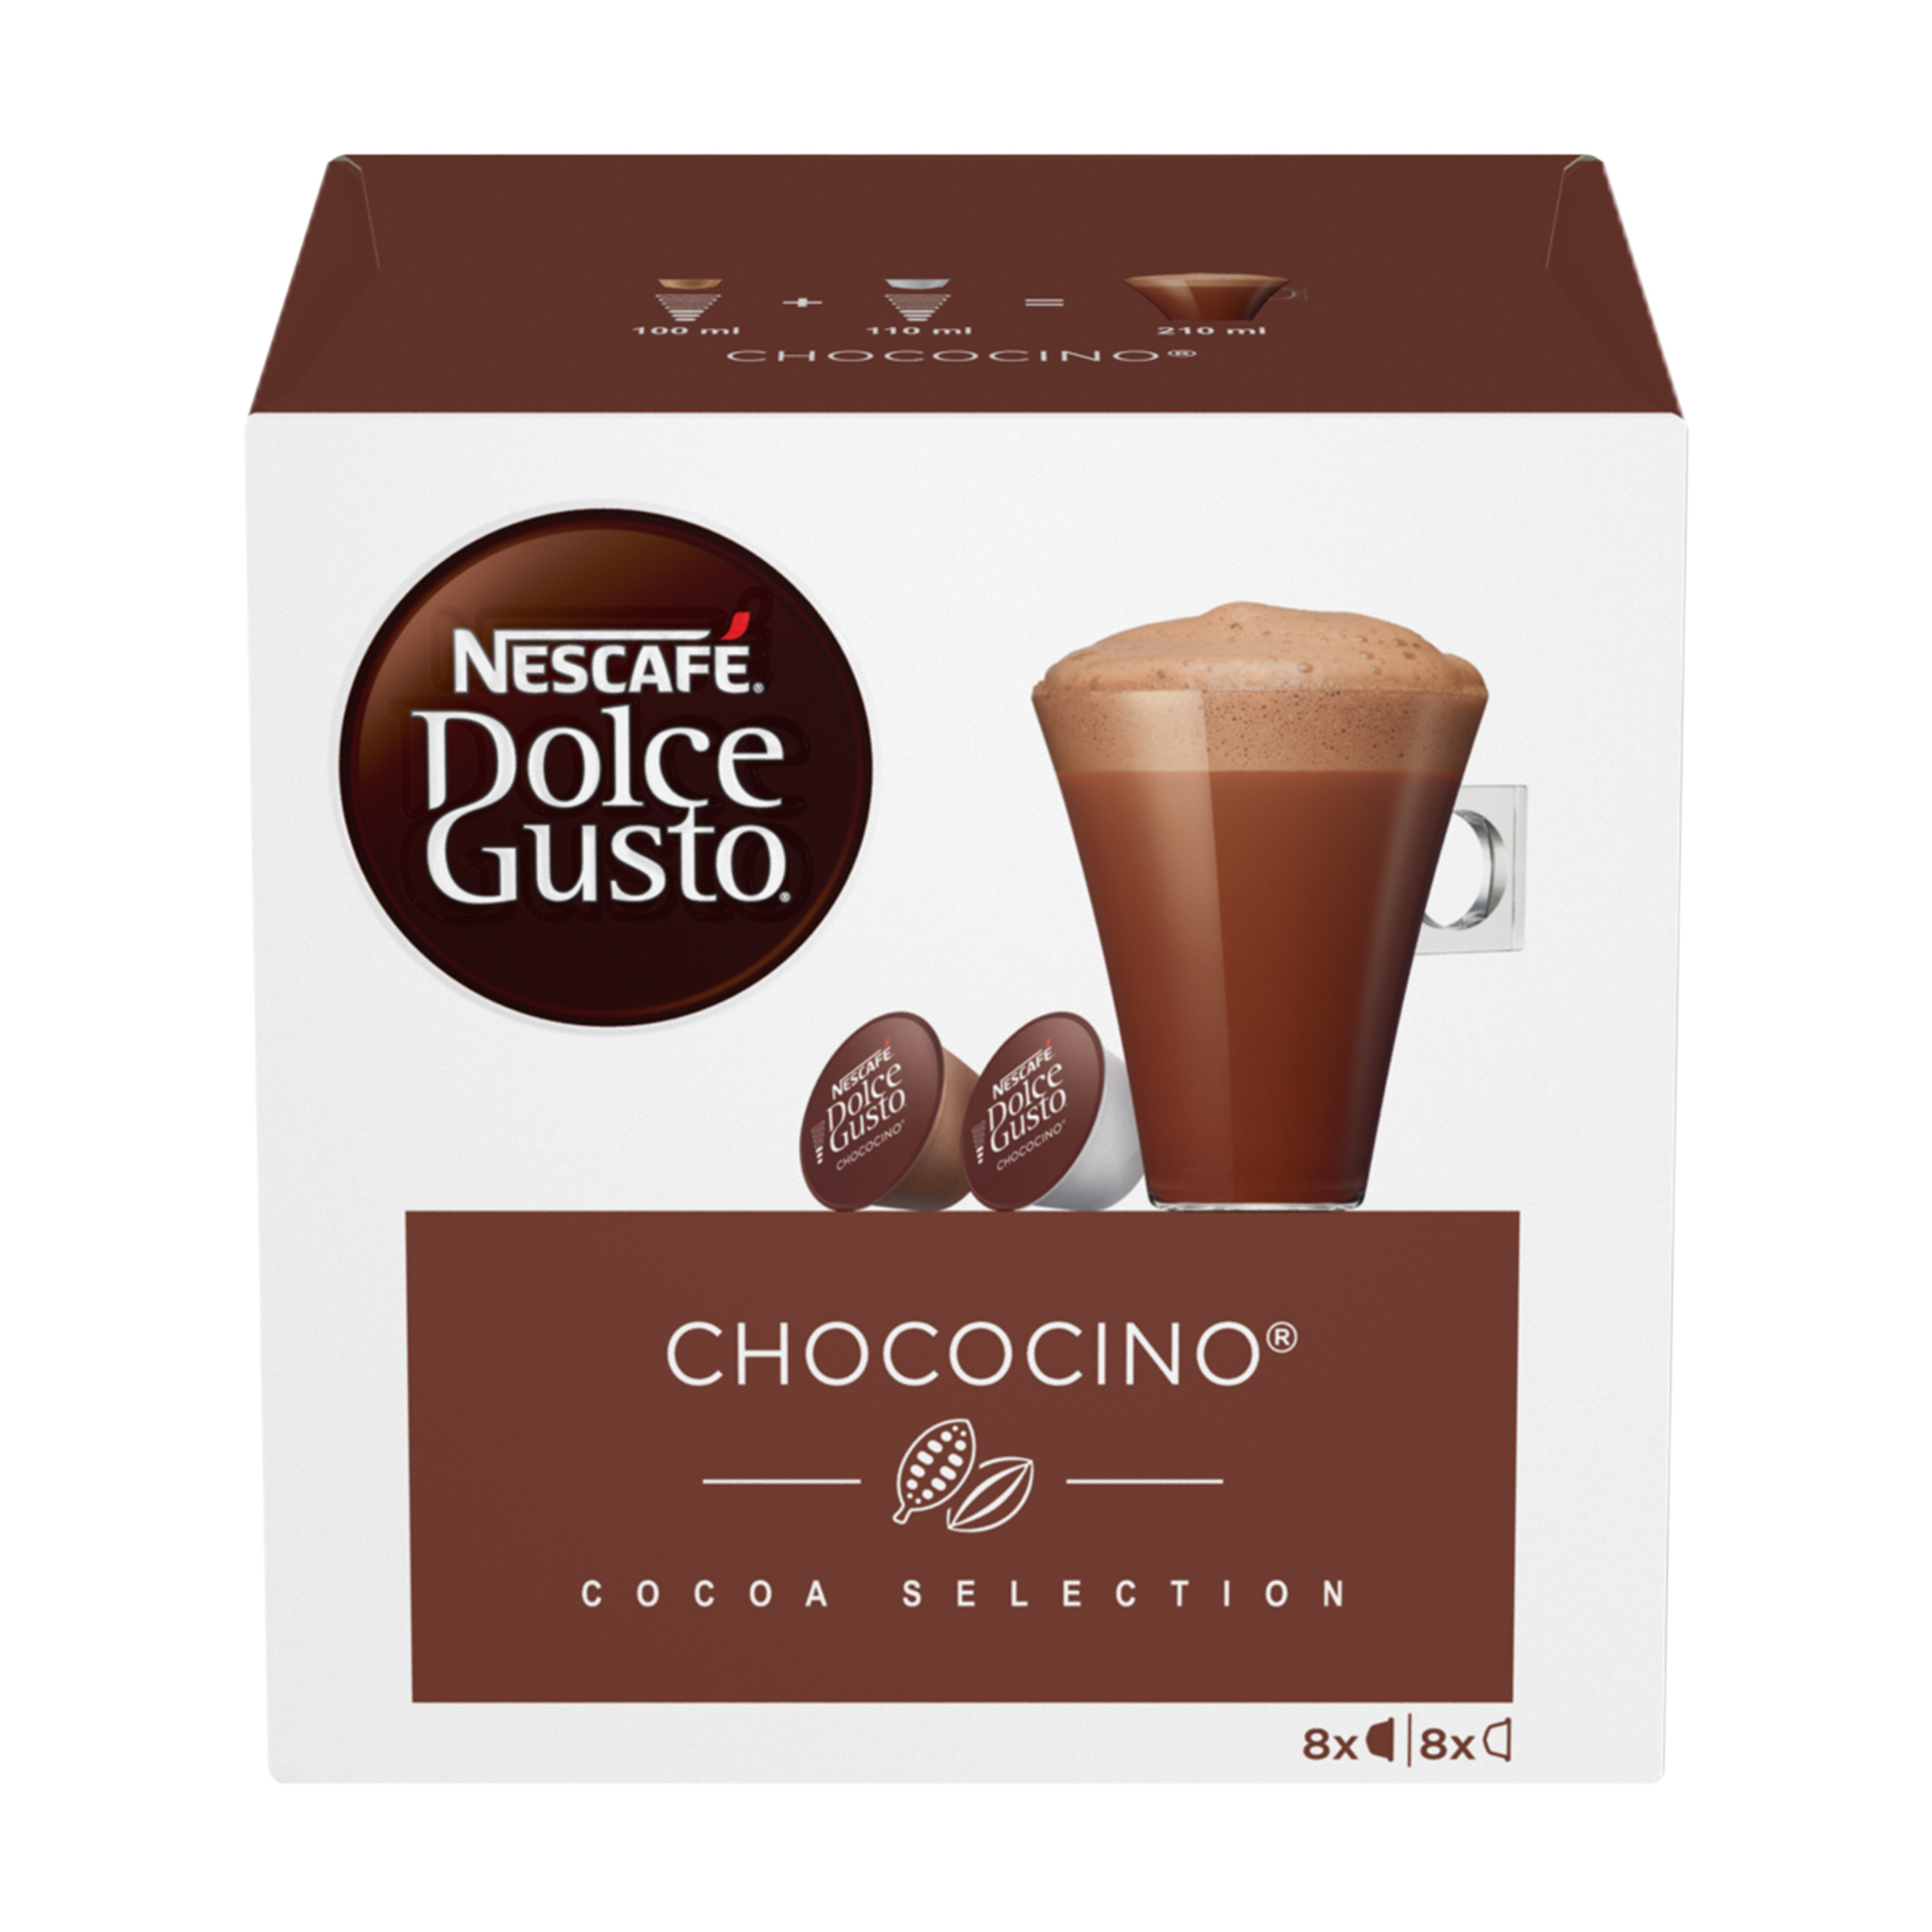 Горячий шоколад в капсулах Nescafe Dolce Gusto Chococino Какао Чокочино, 16 капсул